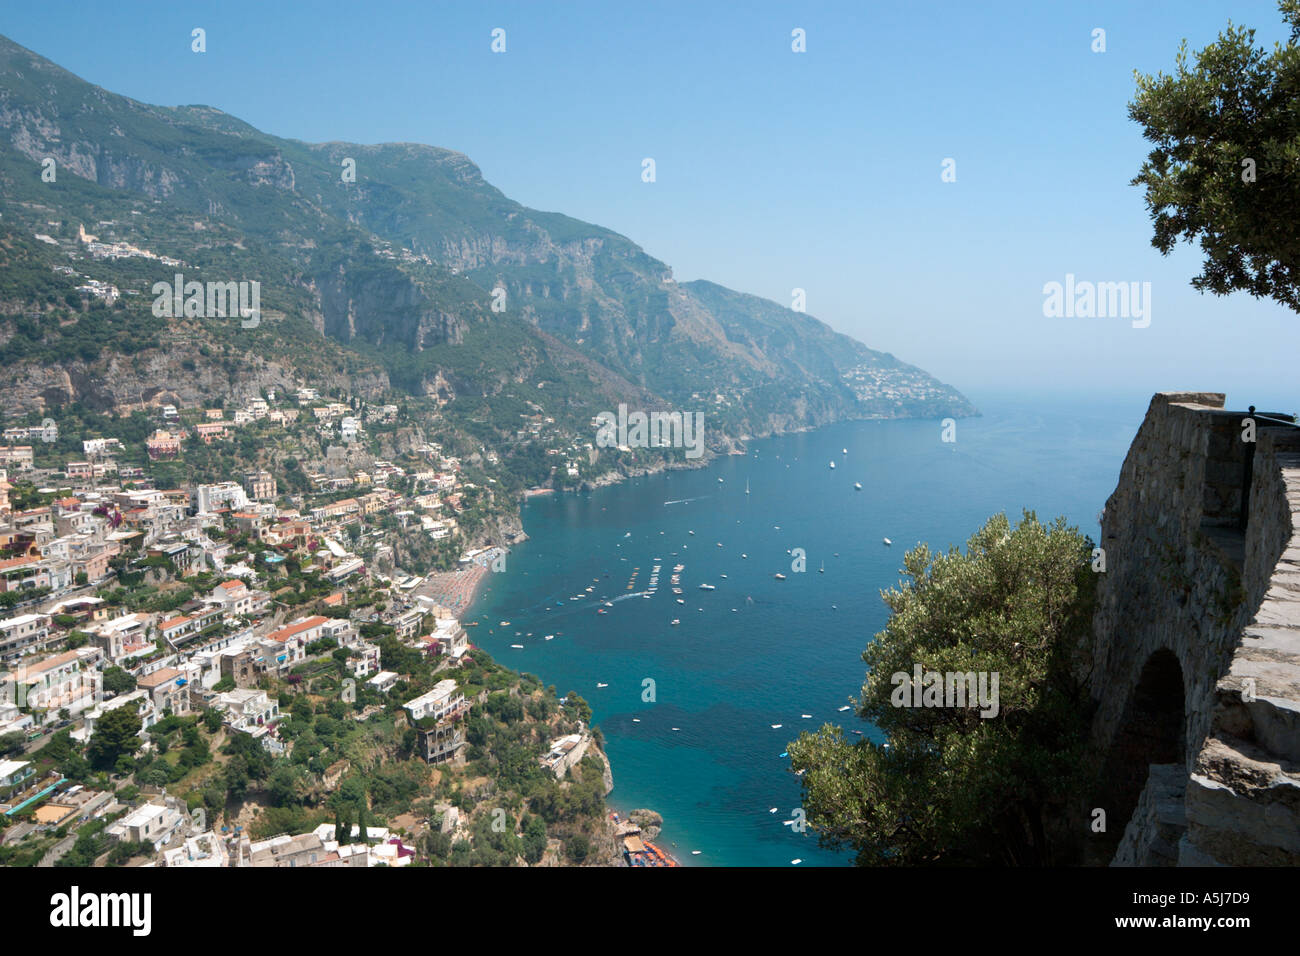 Vistas de Positano, Amalfi Costa (Costiera Amalfitana), Riviera Napolitana, Italia Foto de stock